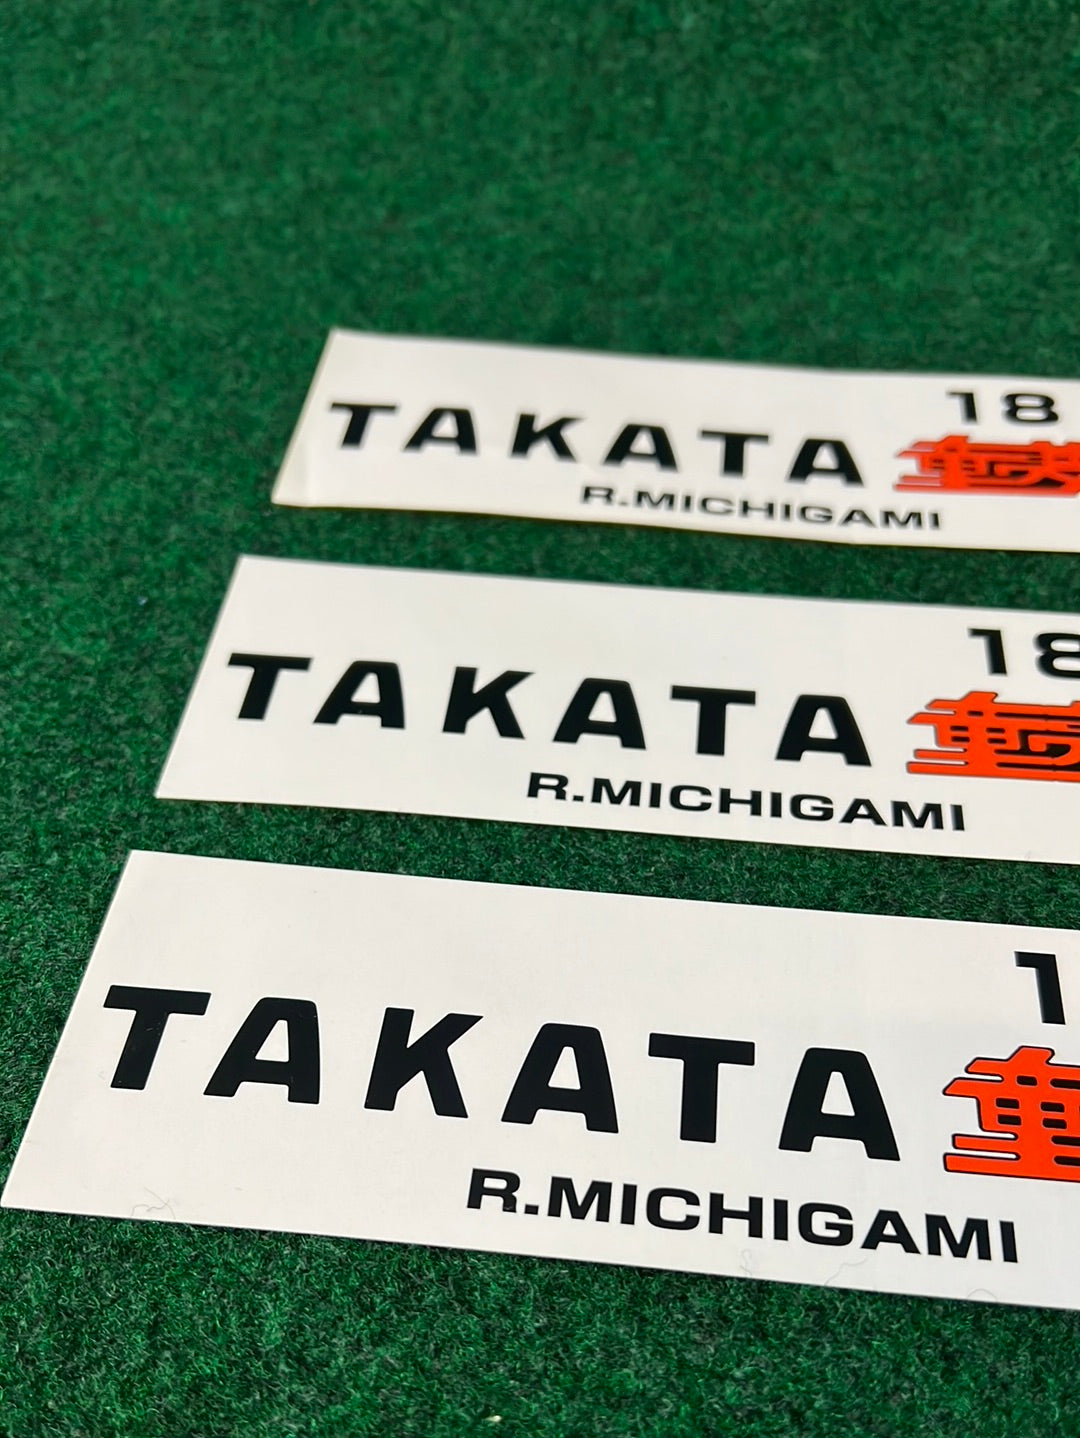 TAKATA DOME JGTC Honda NSX Sticker Set of 3